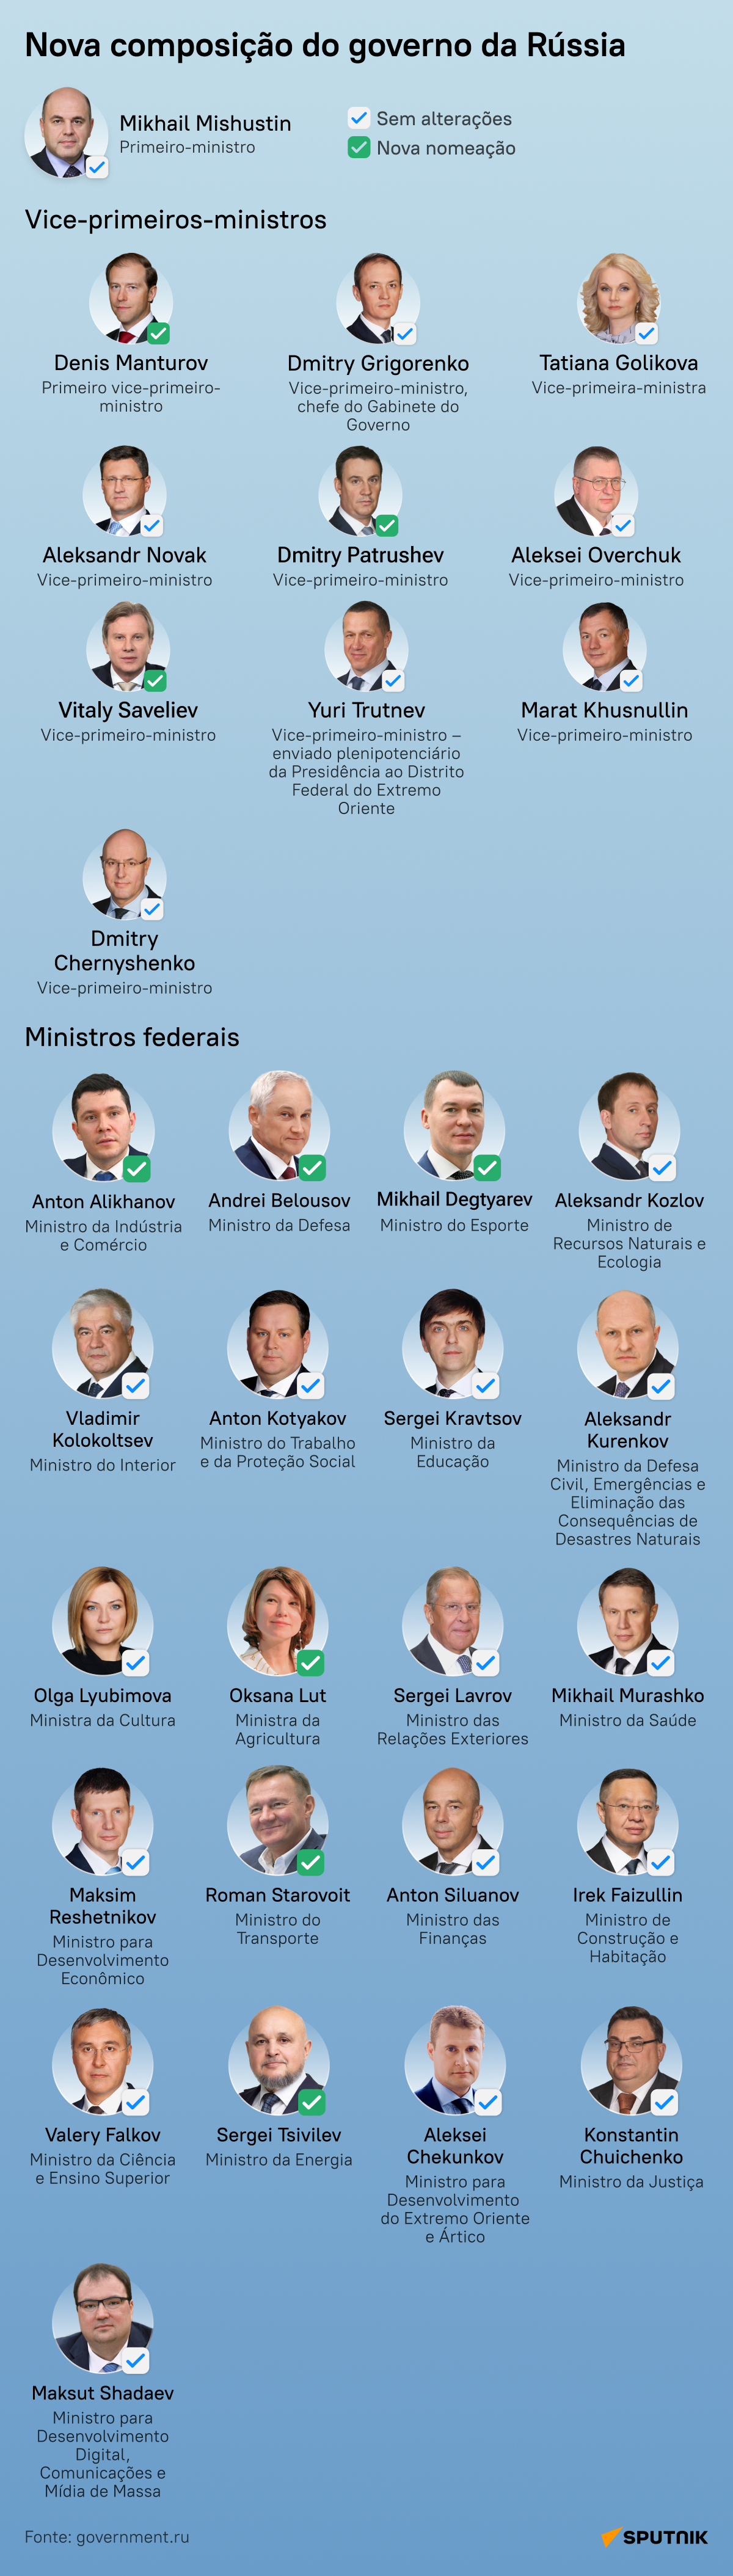 Novo governo da Rússia: descubra alterações na lista dos ministros - Sputnik Brasil